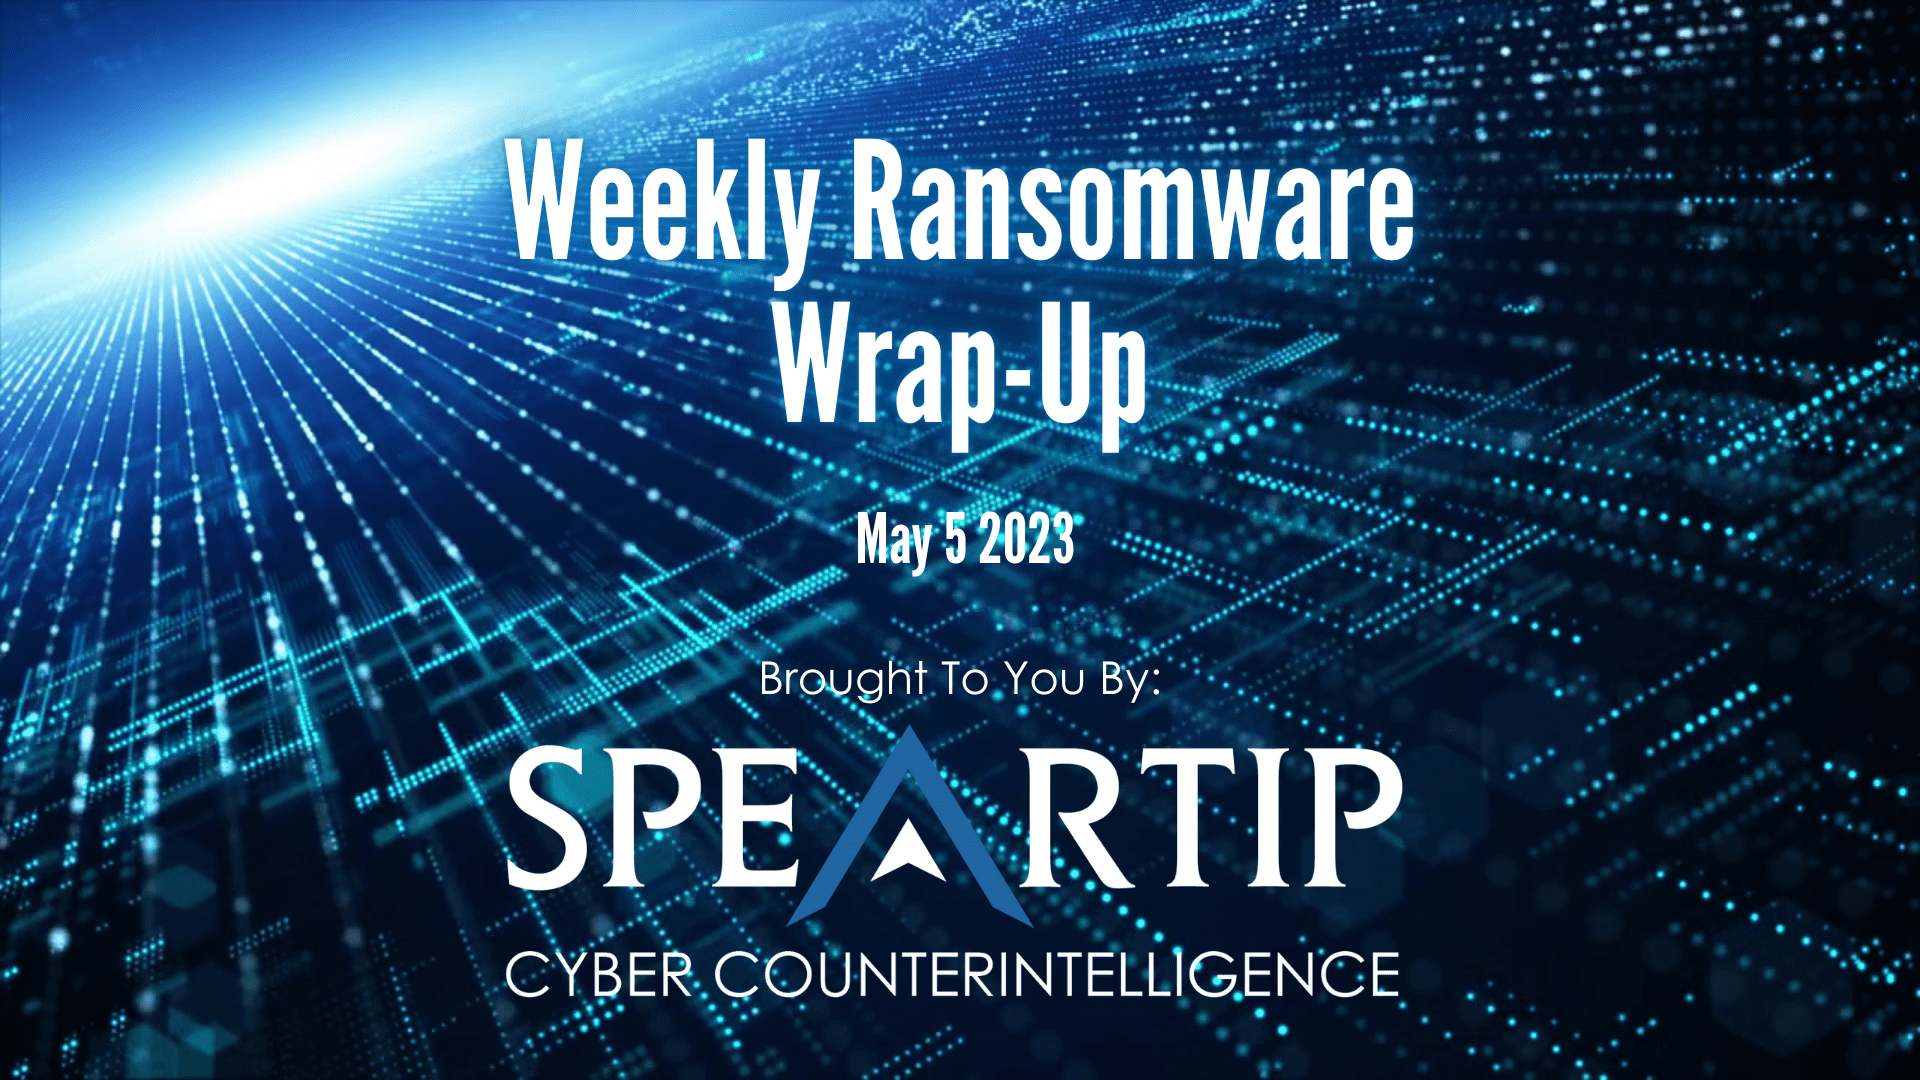 May 5, 2023 Ransomware Wrap-Up